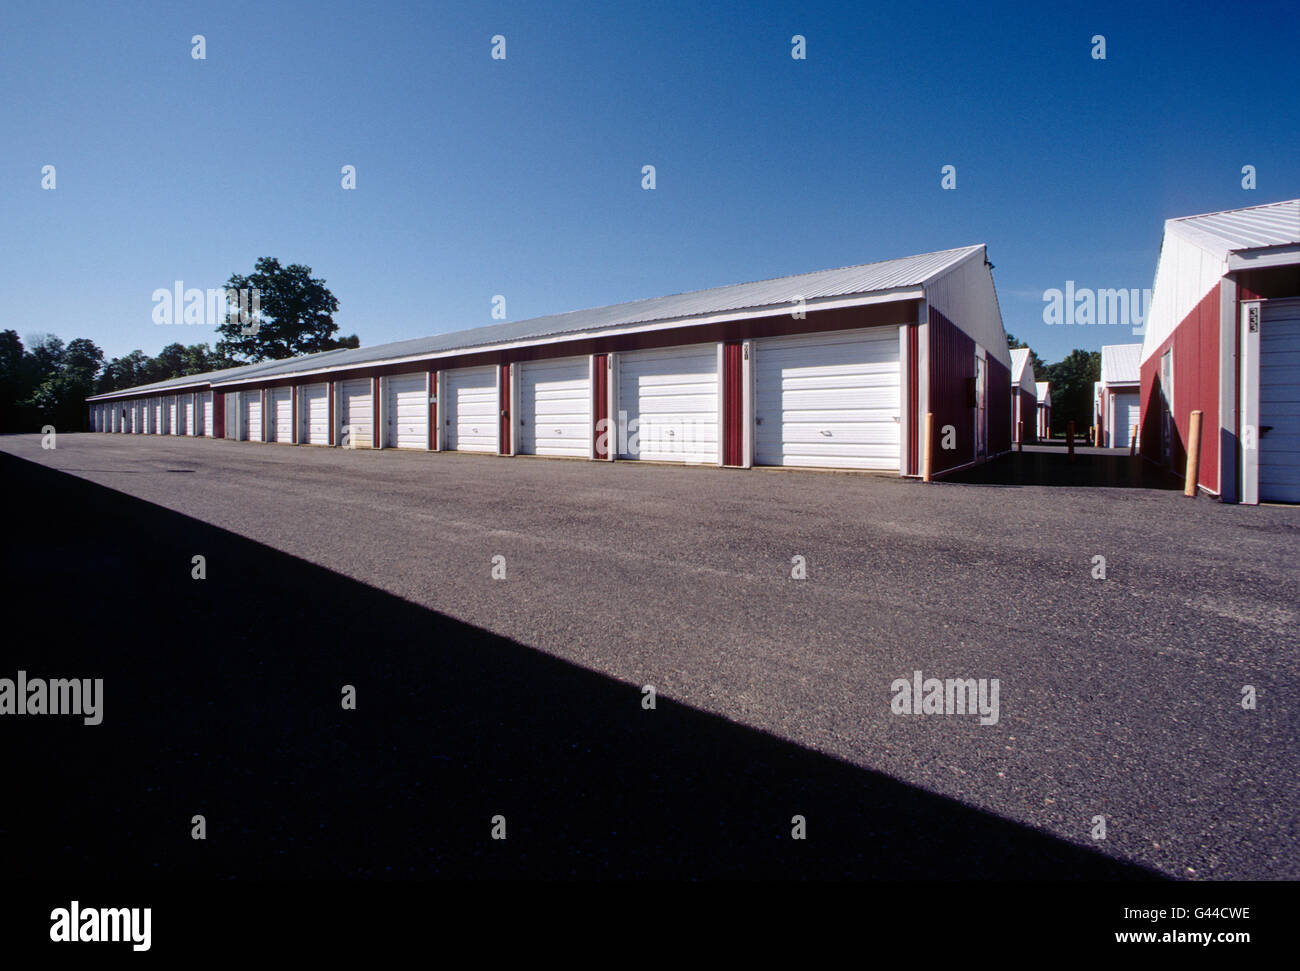 Vista diurna de garaje como unidades de almacenamiento alquiler alineadas en una fila Foto de stock